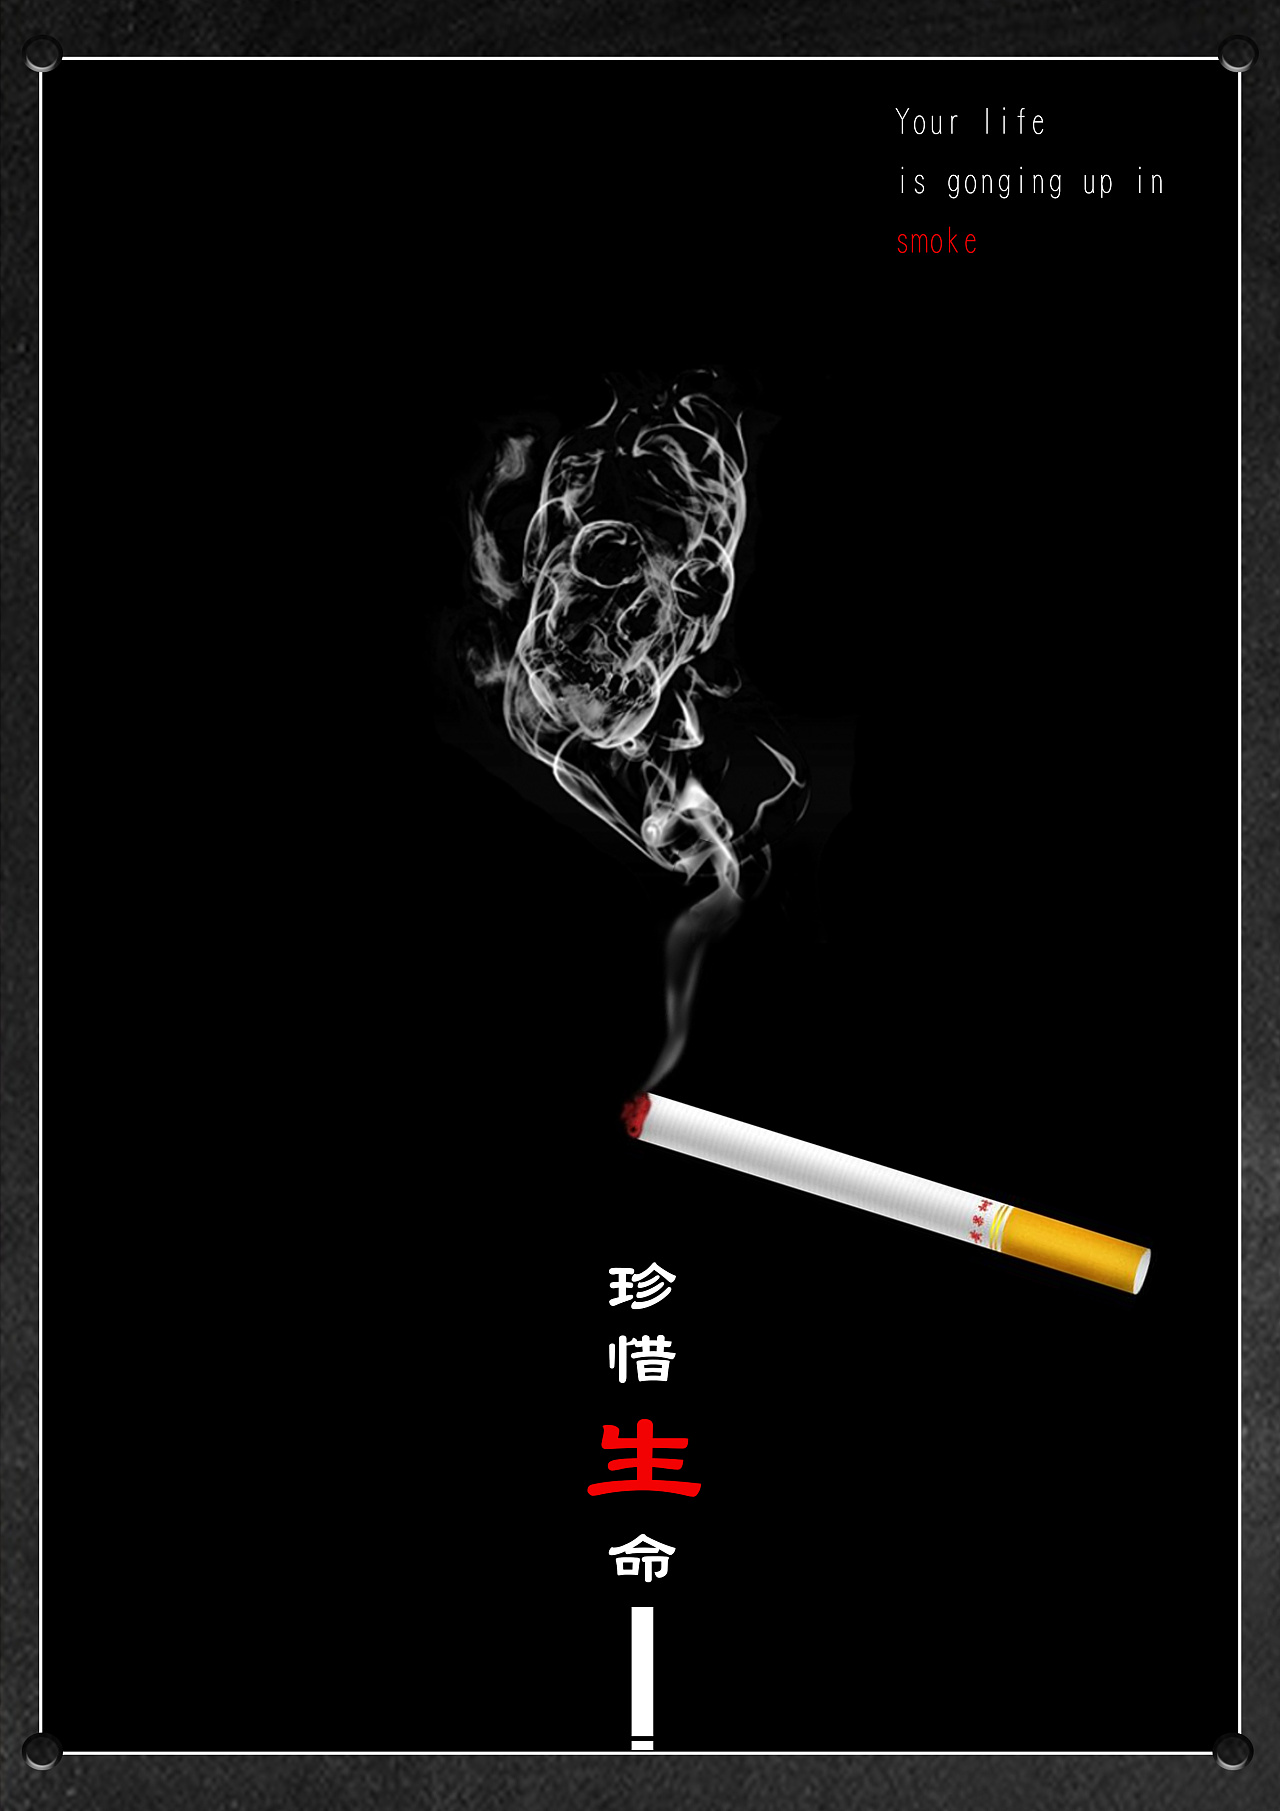 黄黑色戒烟黑白广告公益中文海报 - 模板 - Canva可画